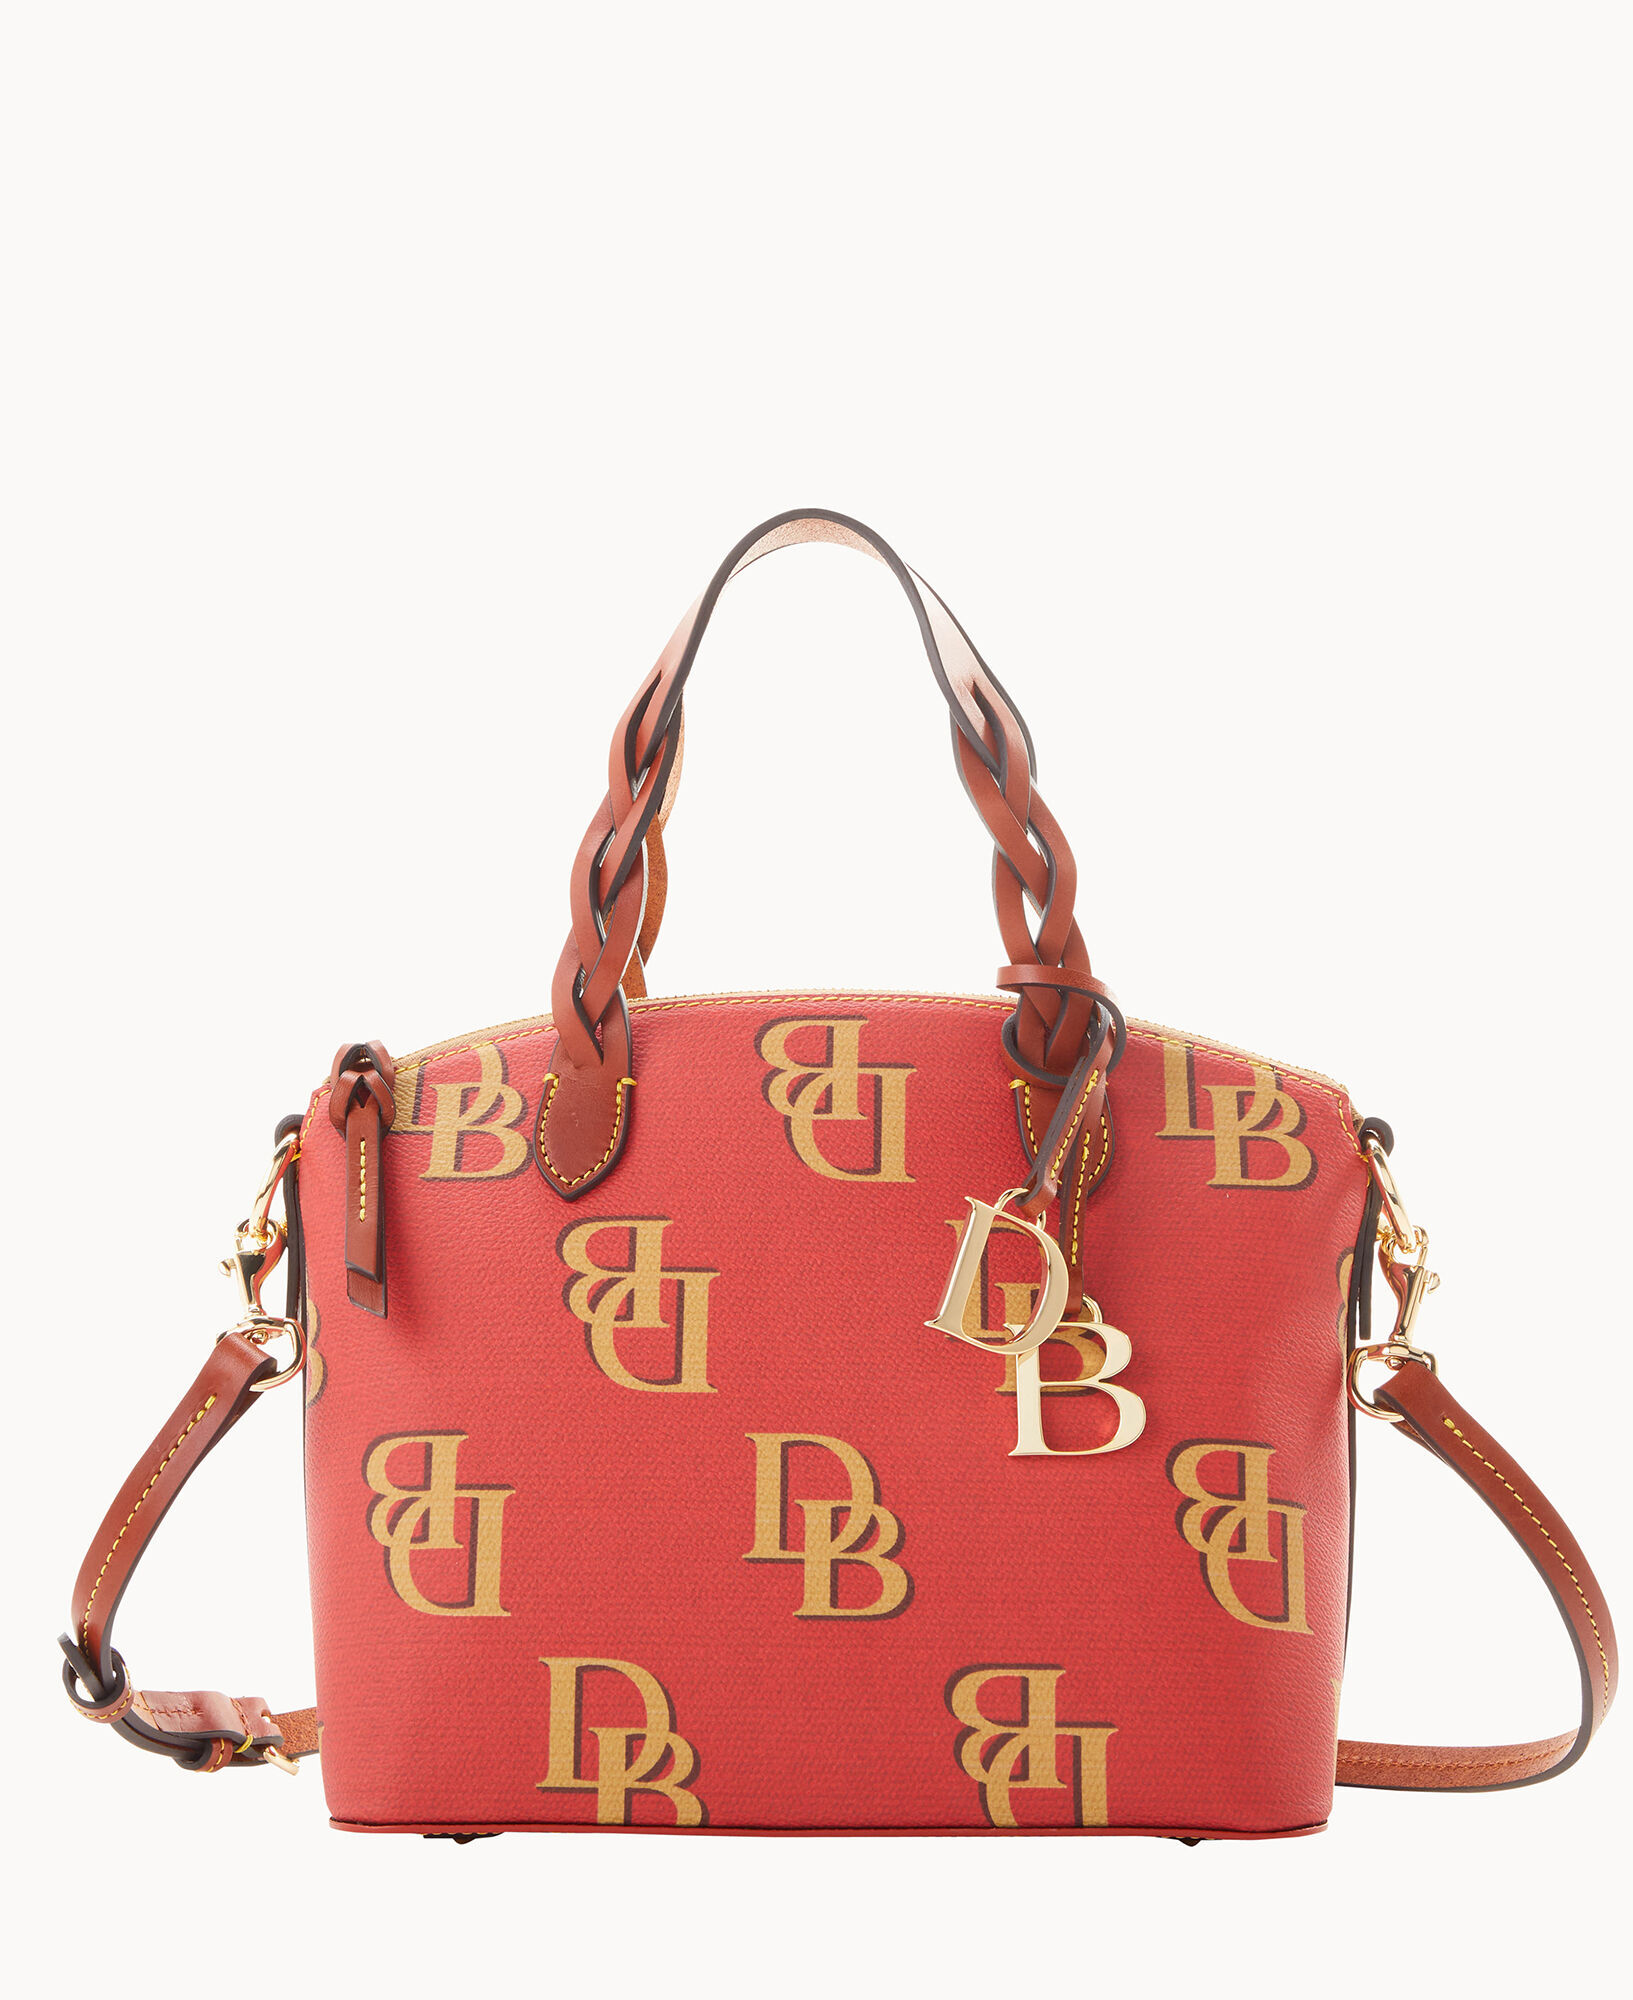 Dooney & Bourke Small Heidi Satchel Bag